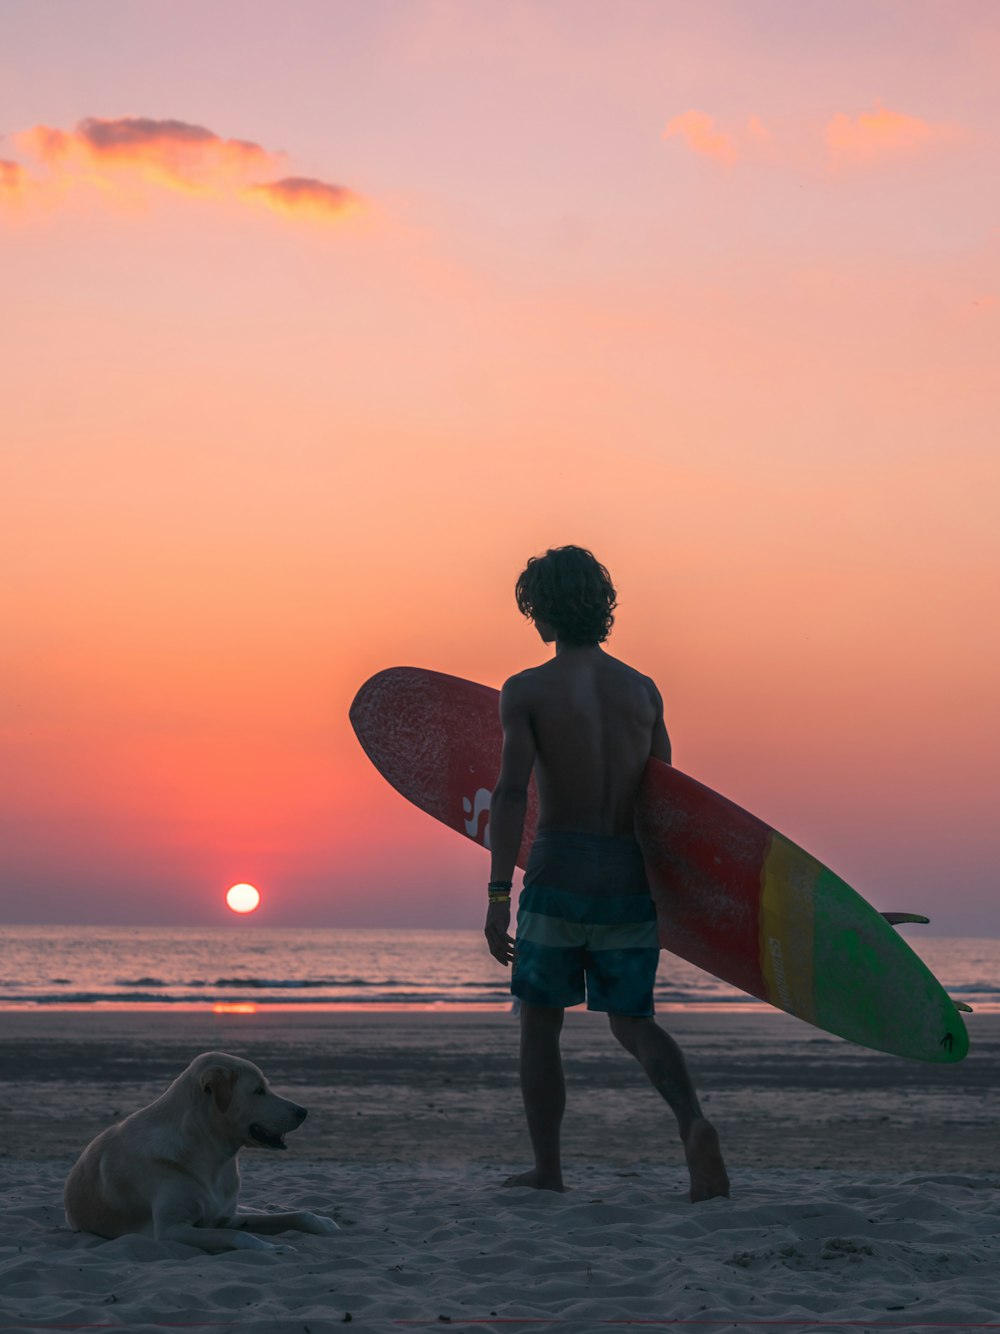 uomo che cammina verso la spiaggia con tavola da surf vicino al labrador retriever giallo che si trova sulla sabbia della spiaggia